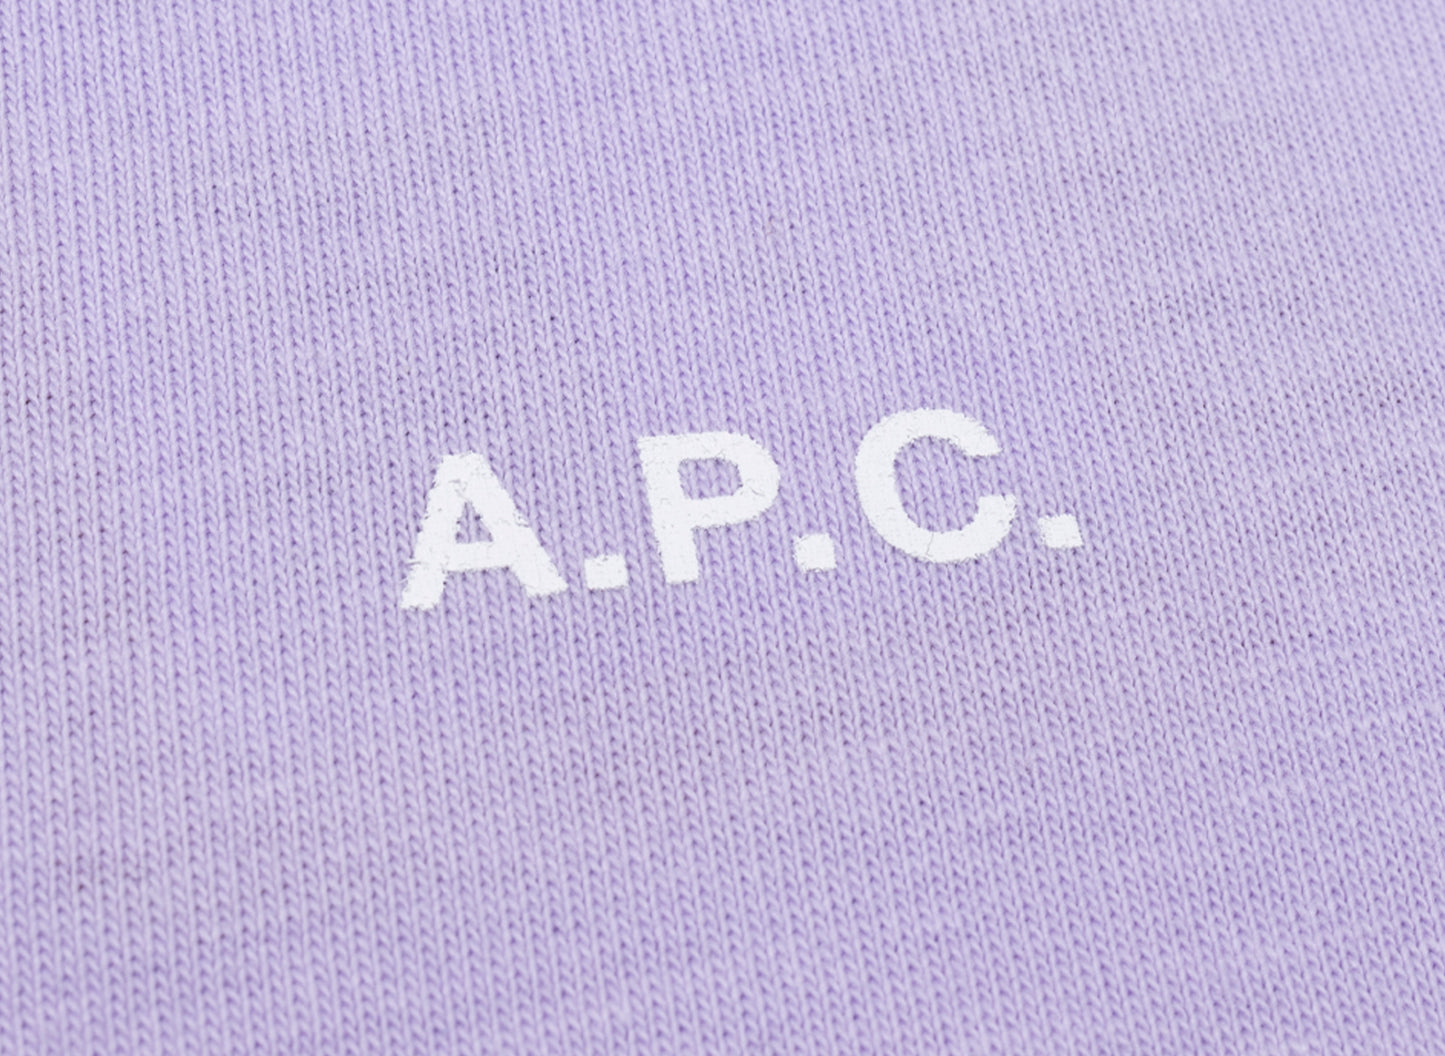 A.P.C. Kyle T-Shirt in Lavender